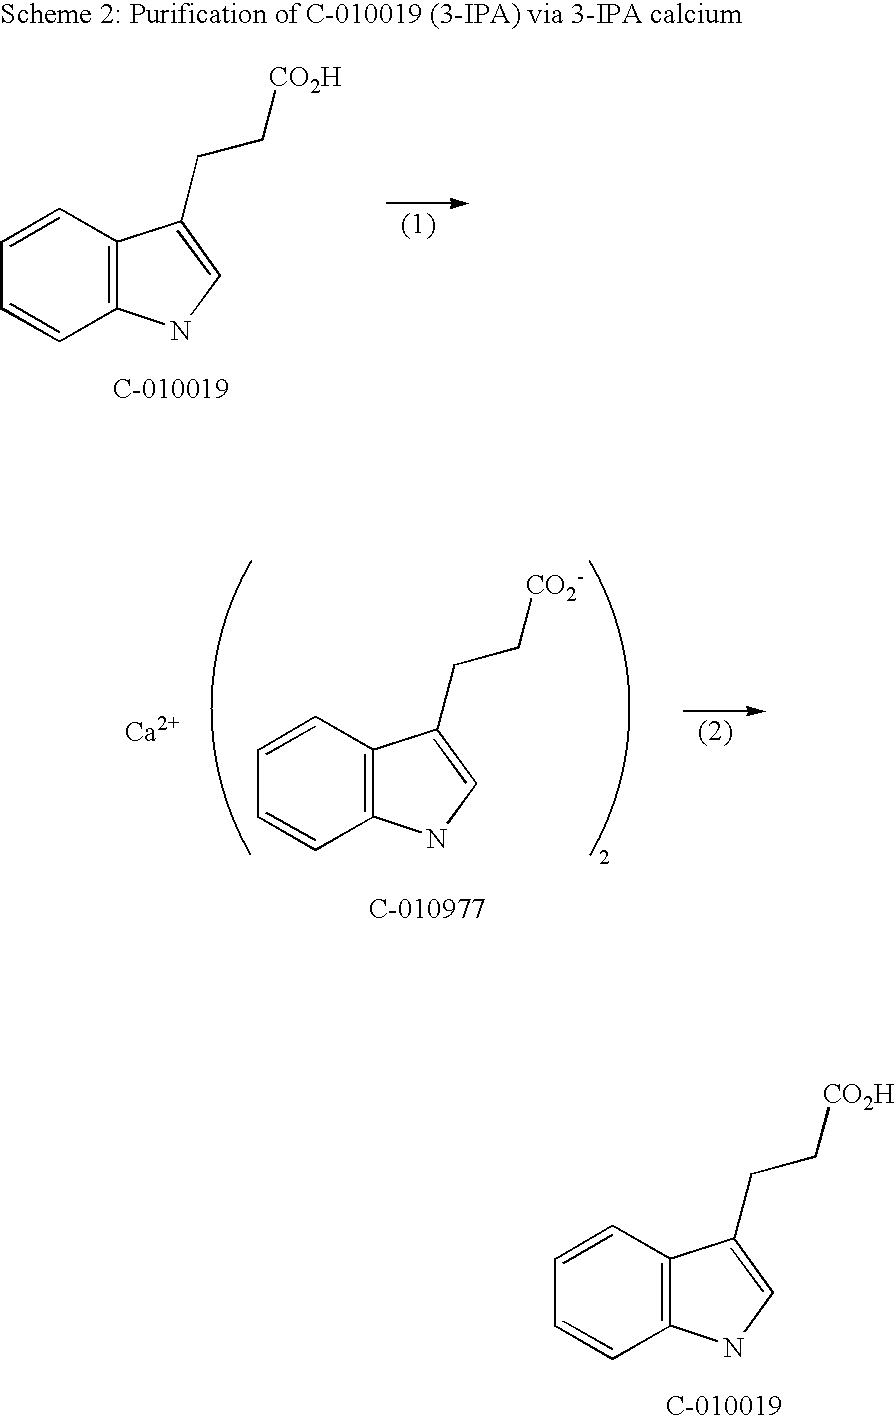 3-(3-indolyl) propionic acid calcium salt and method of making 3-(3-indolyl) propionic acid free acid therefrom